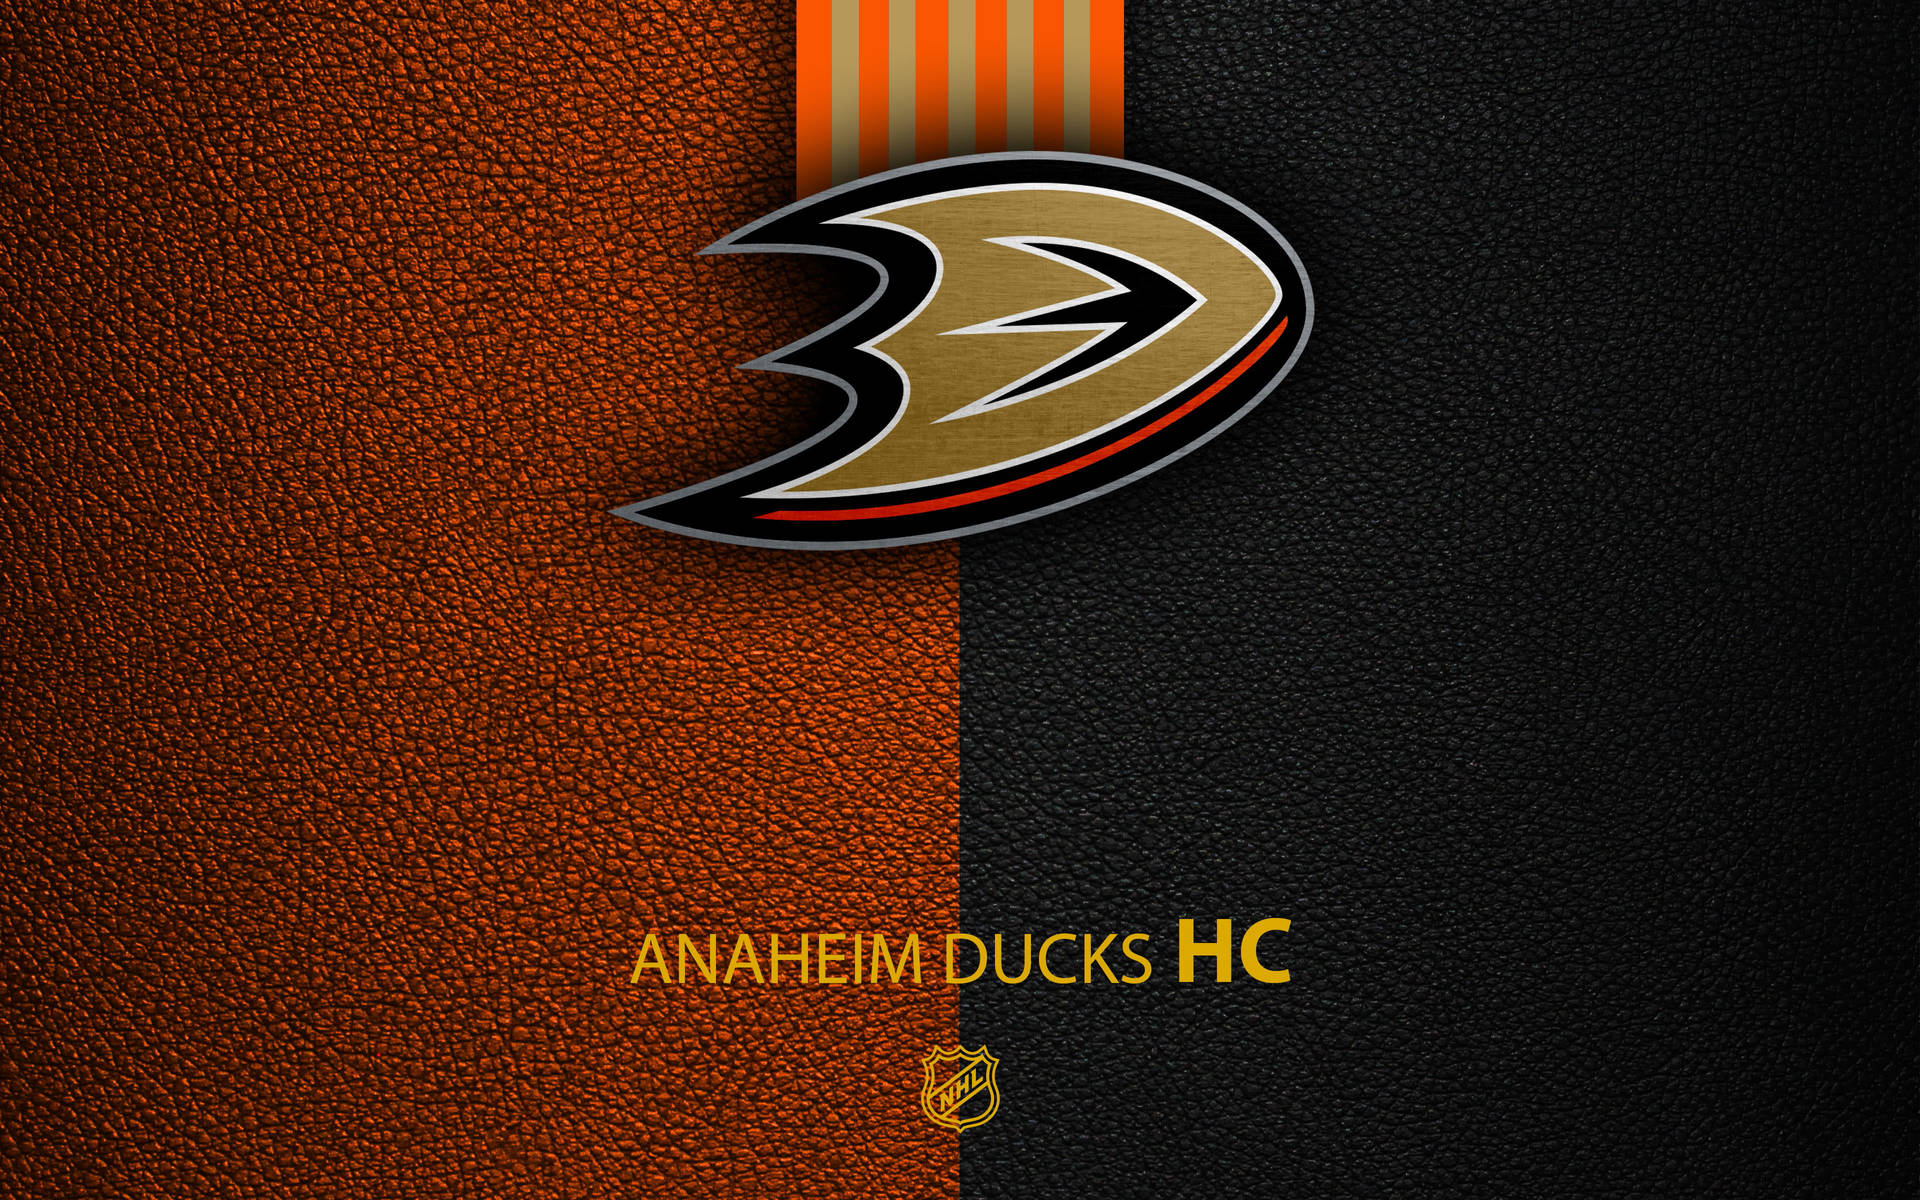 Anaheim Ducks Background Photos